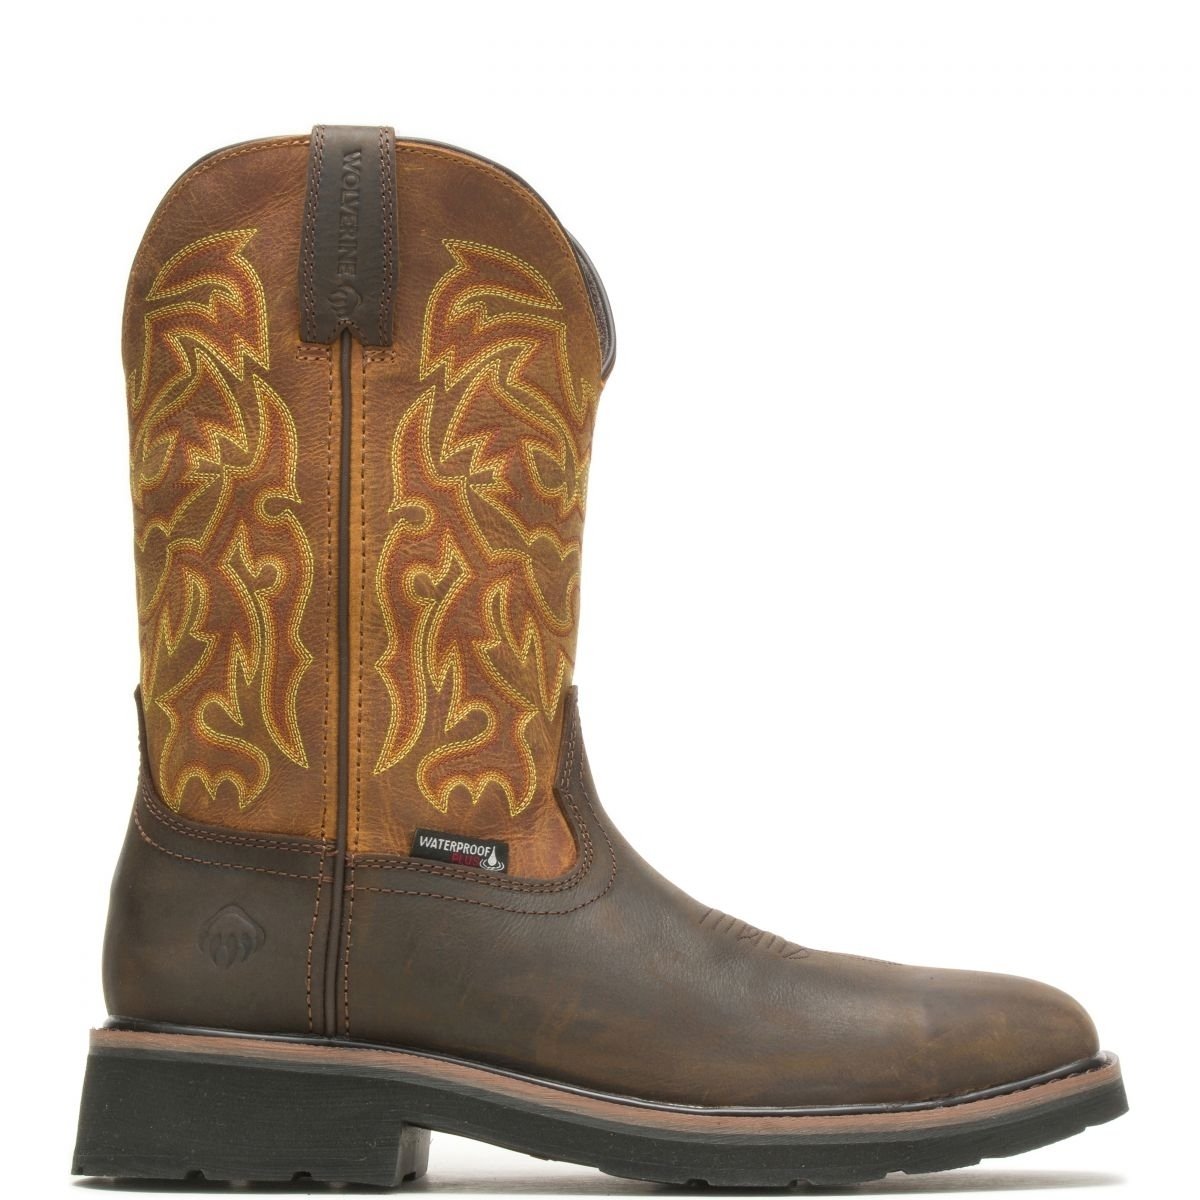 WOLVERINE Mens Rancher 10" Steel Toe Waterproof Work Boot Golden/Brown - W221029 GOLDEN/BROWN